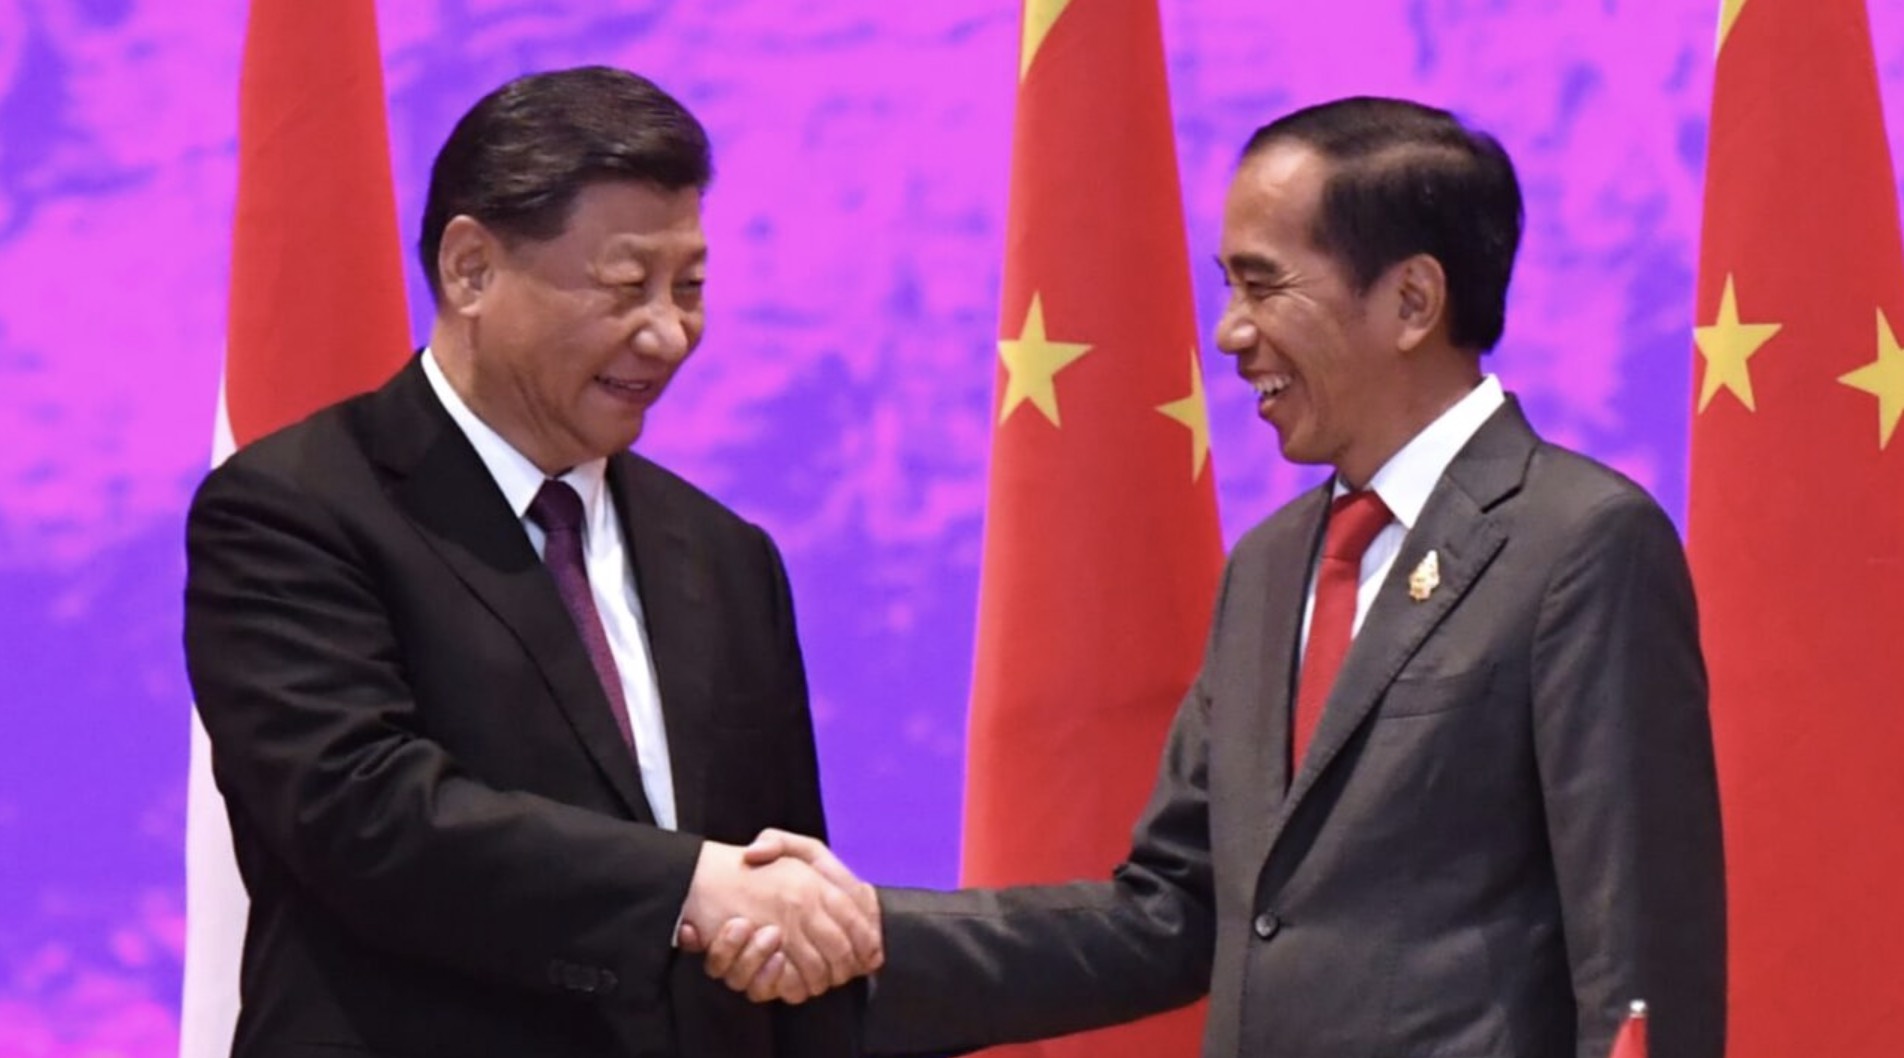 Presiden Joko Widodo Lakukan Pertemuan Bilateral dengan Presiden Xi Jinping